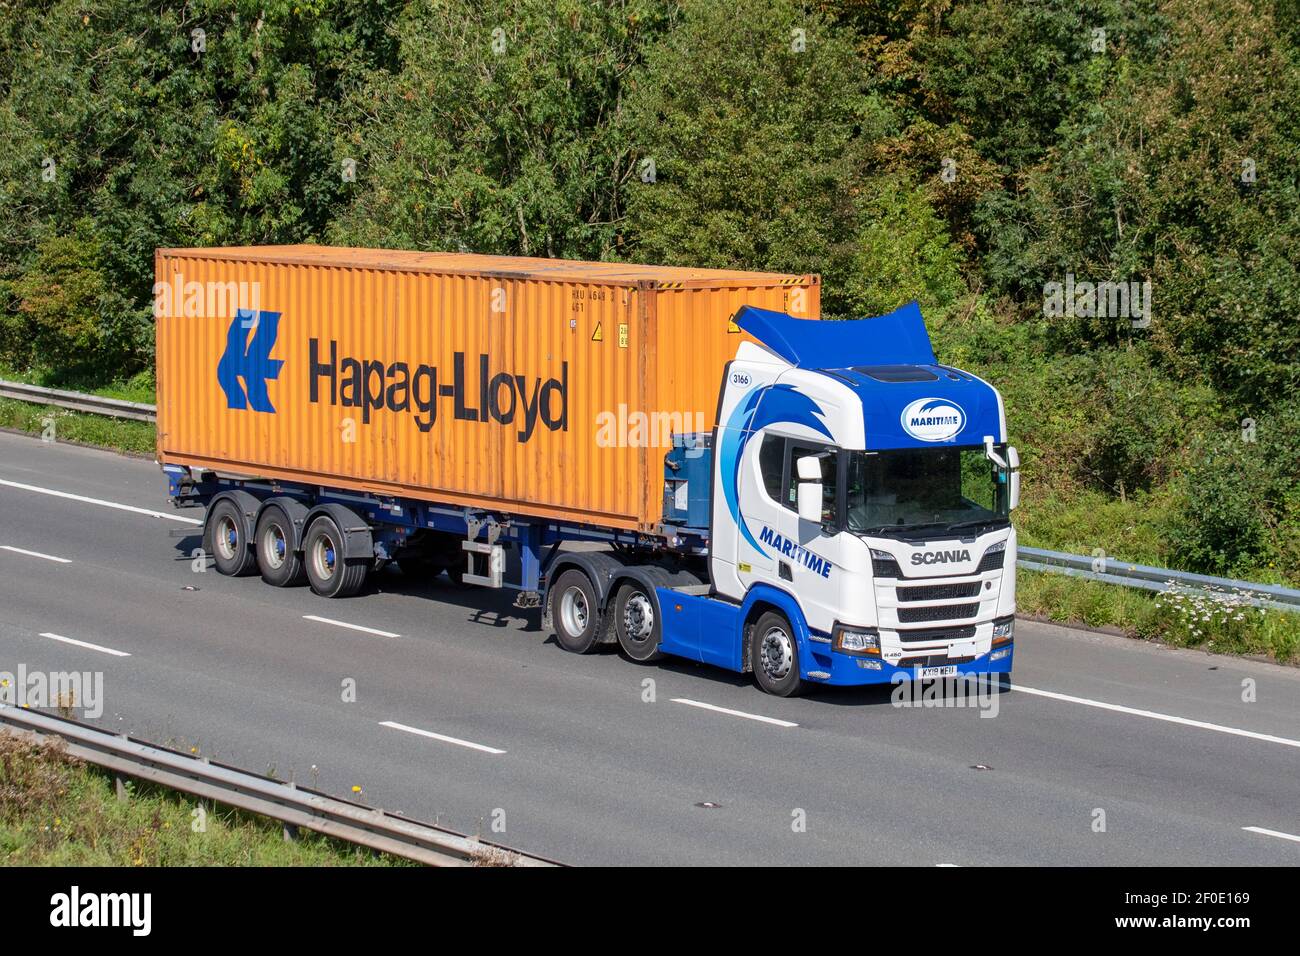 Azul marítimo blanco camiones de transporte, camiones, vehículos pesados, transporte, camiones, Transporte de carga, vehículo Scania R 480, industria europea de transporte comercial HGV, M6 en Manchester, Reino Unido Foto de stock